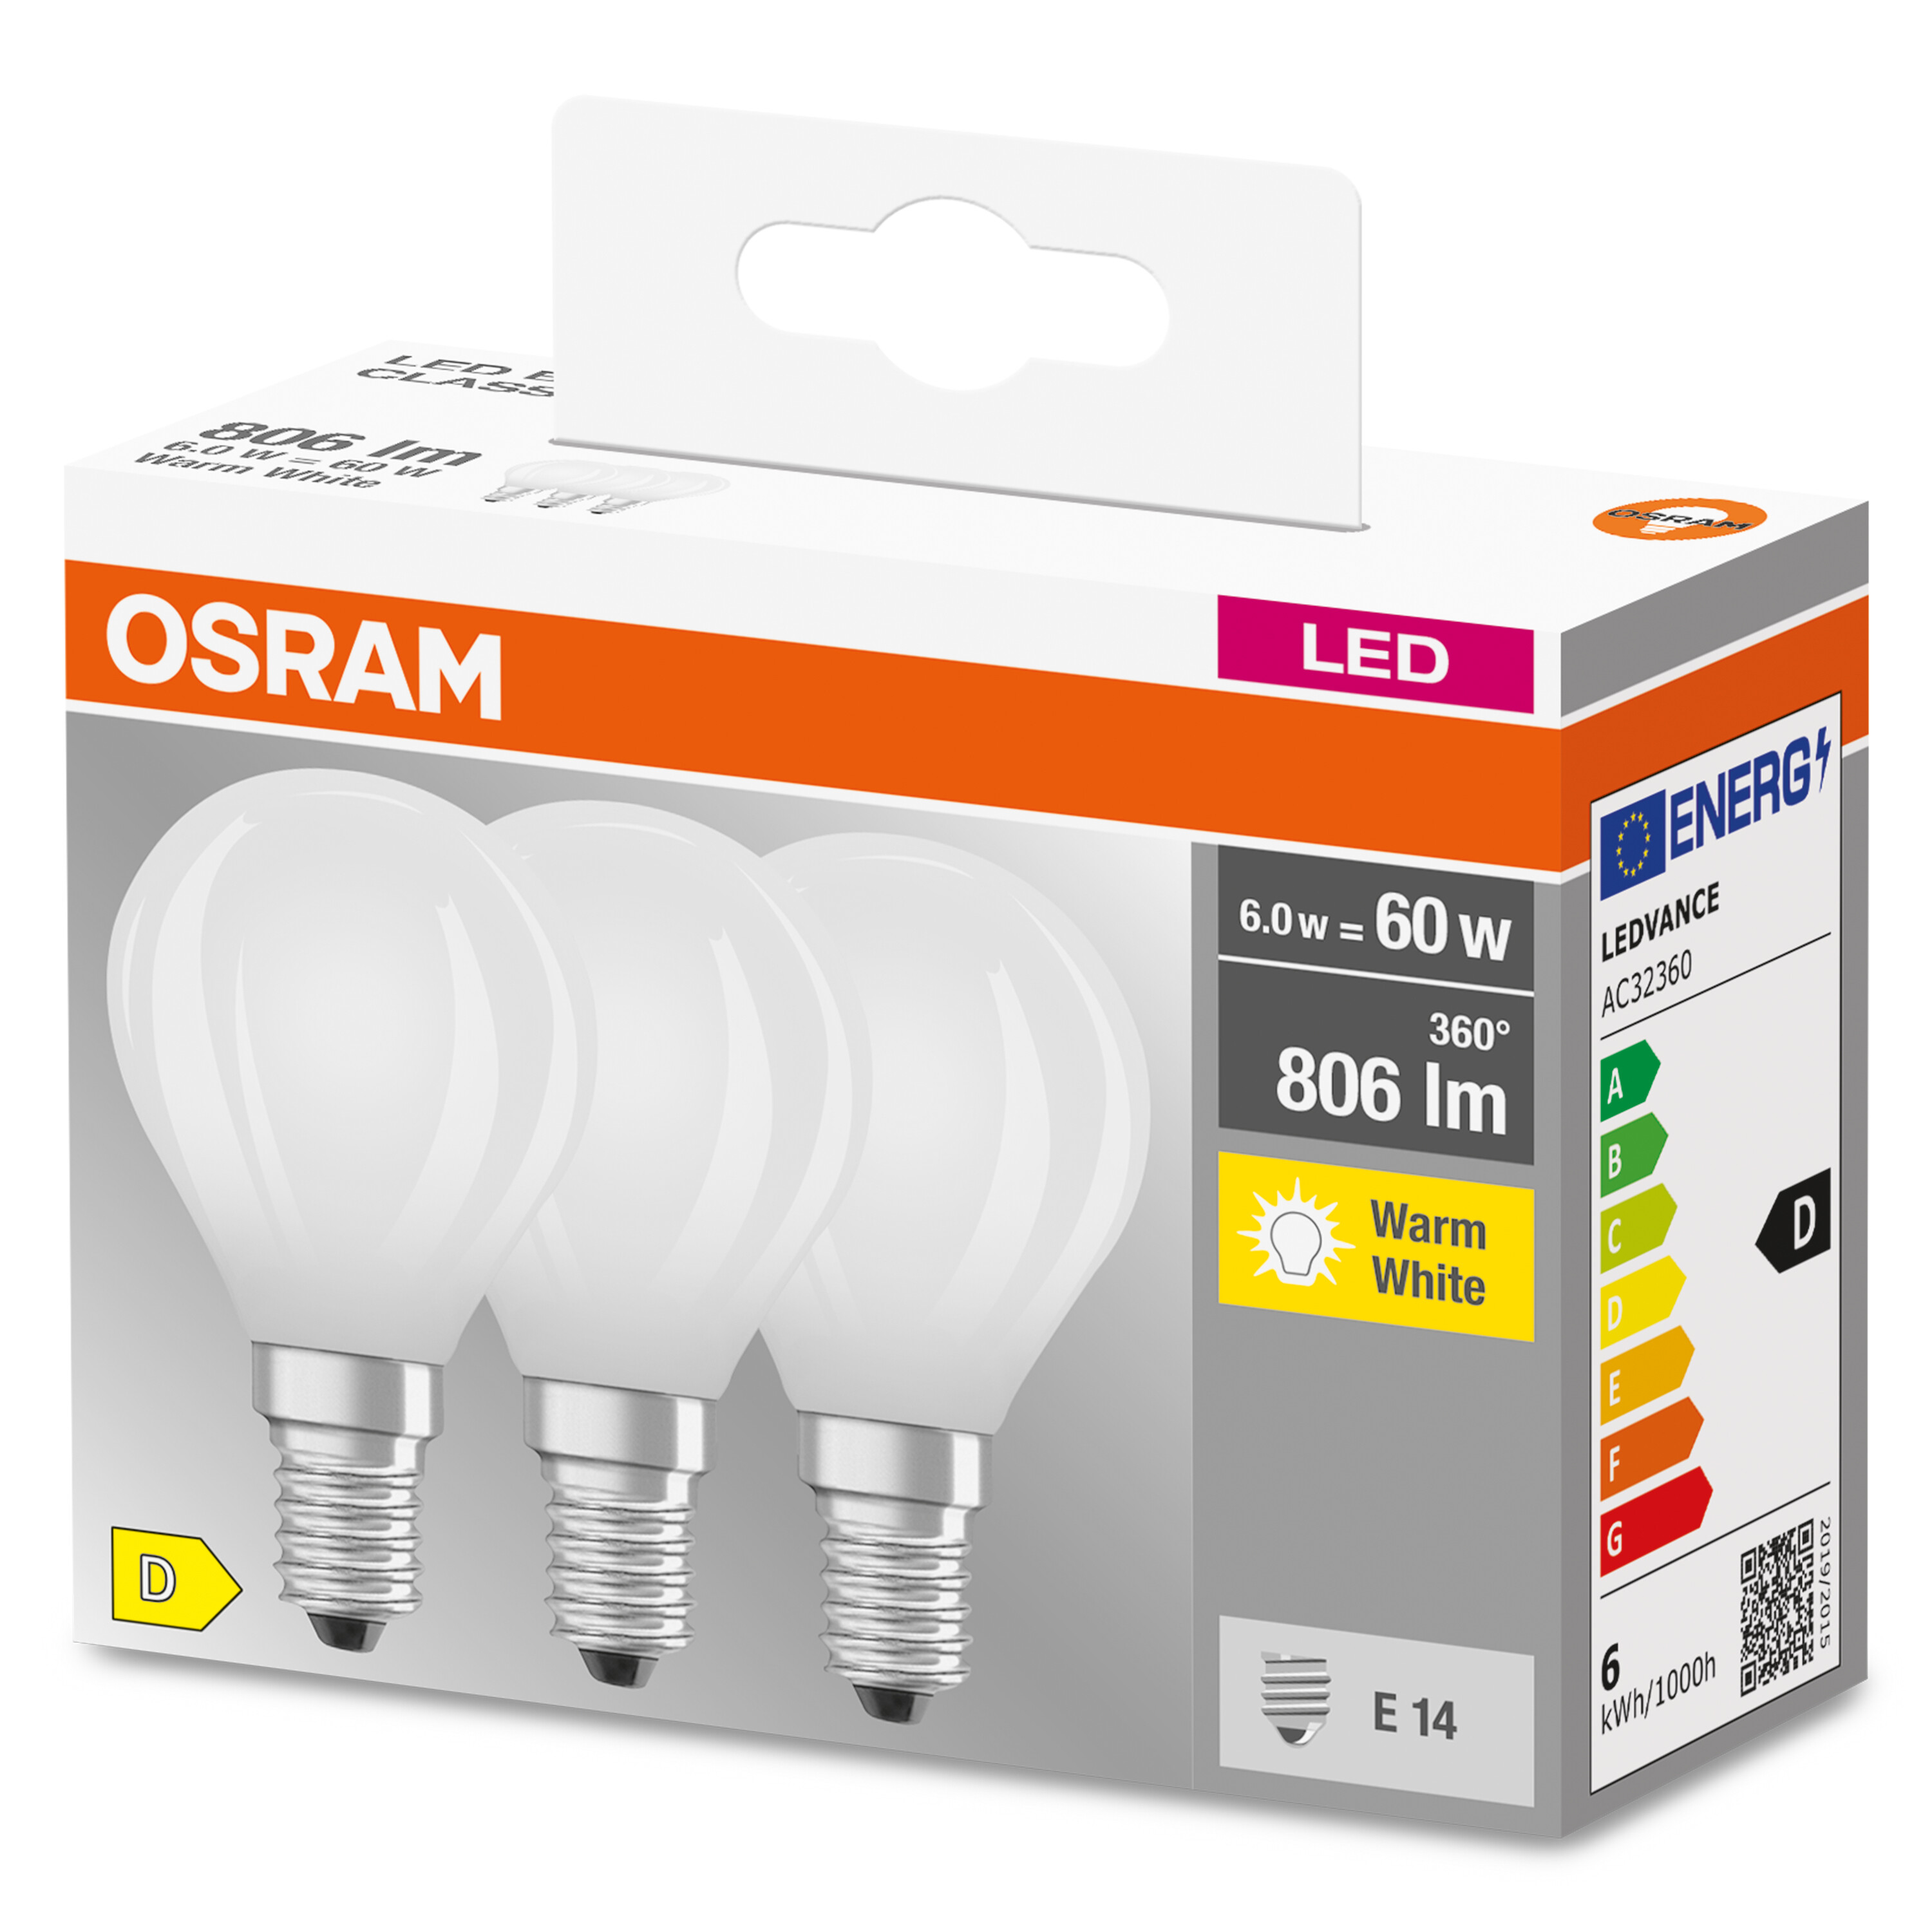 OSRAM  LED BASE CLASSIC 806 Lampe Lumen P Warmweiß LED